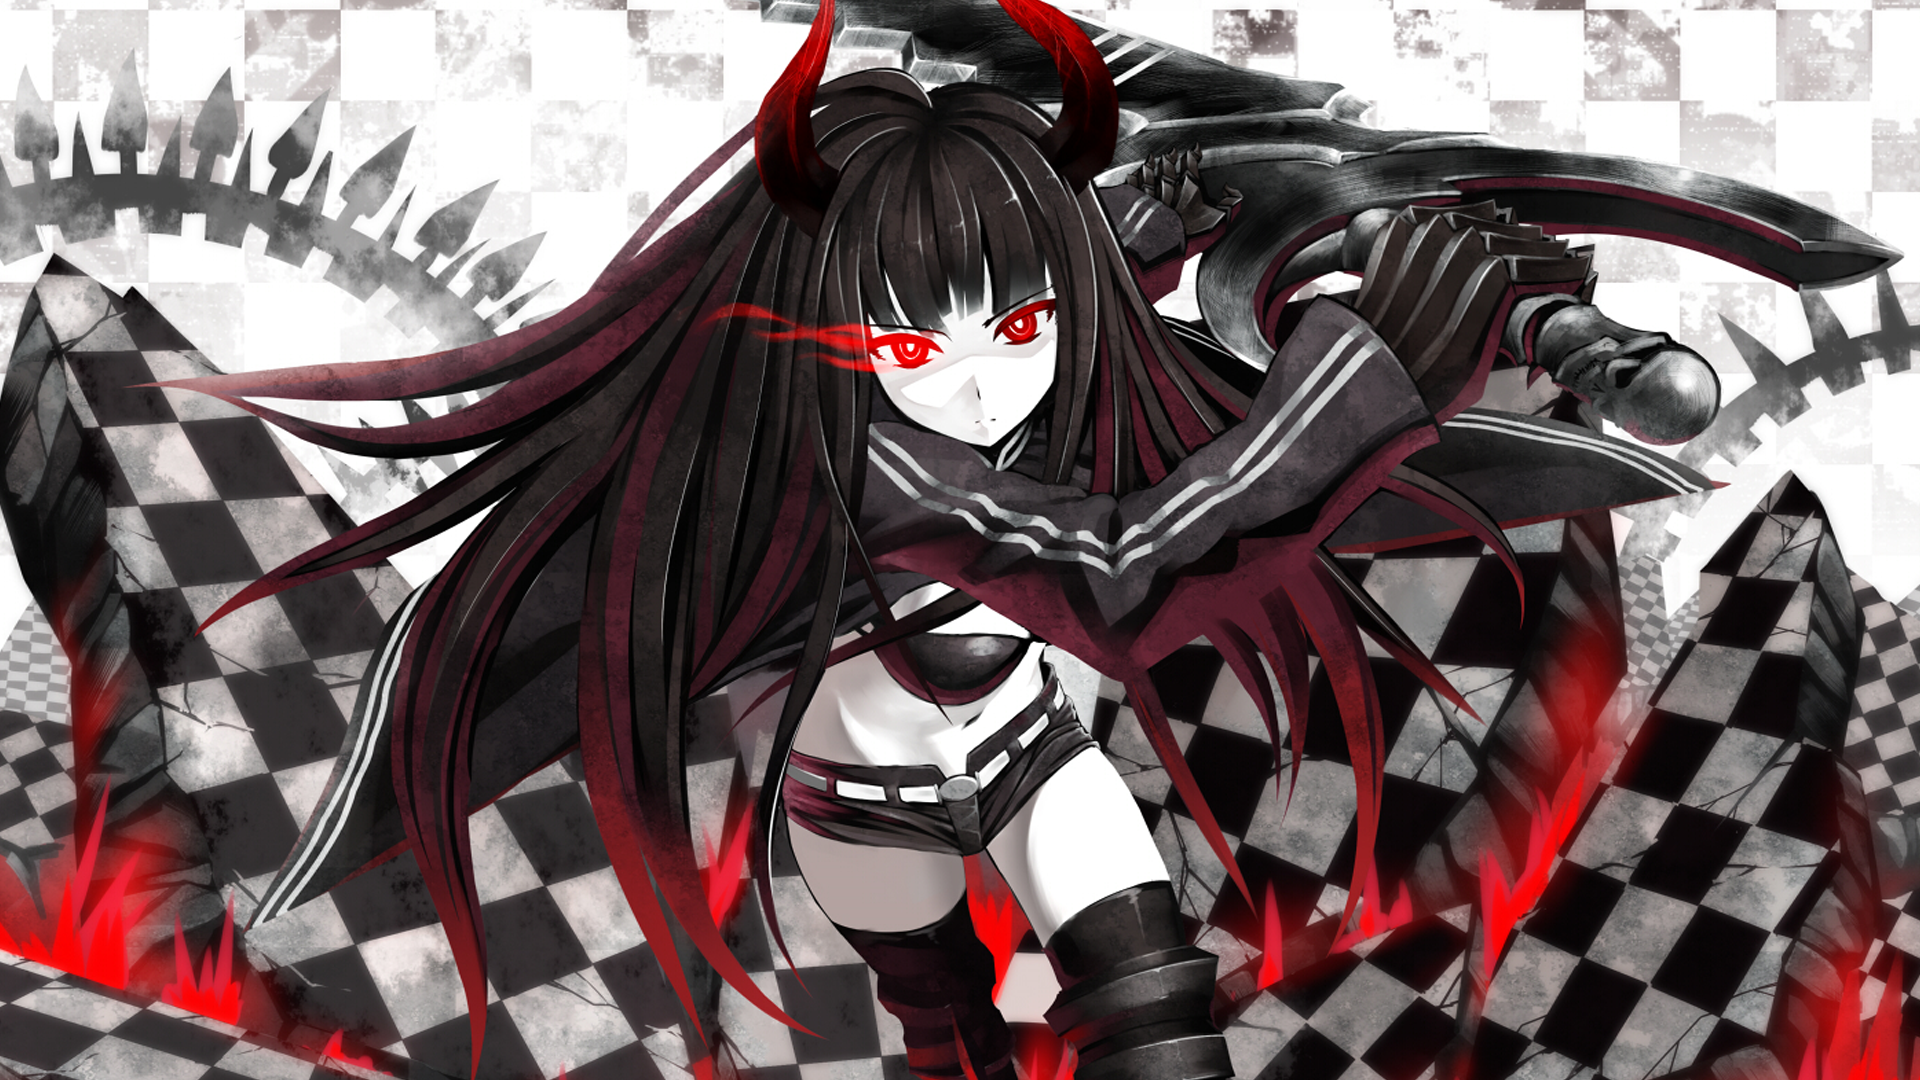 Black Gold Saw, Anime Girls, Red Eyes - Anime Evil Demon Girl - HD Wallpaper 